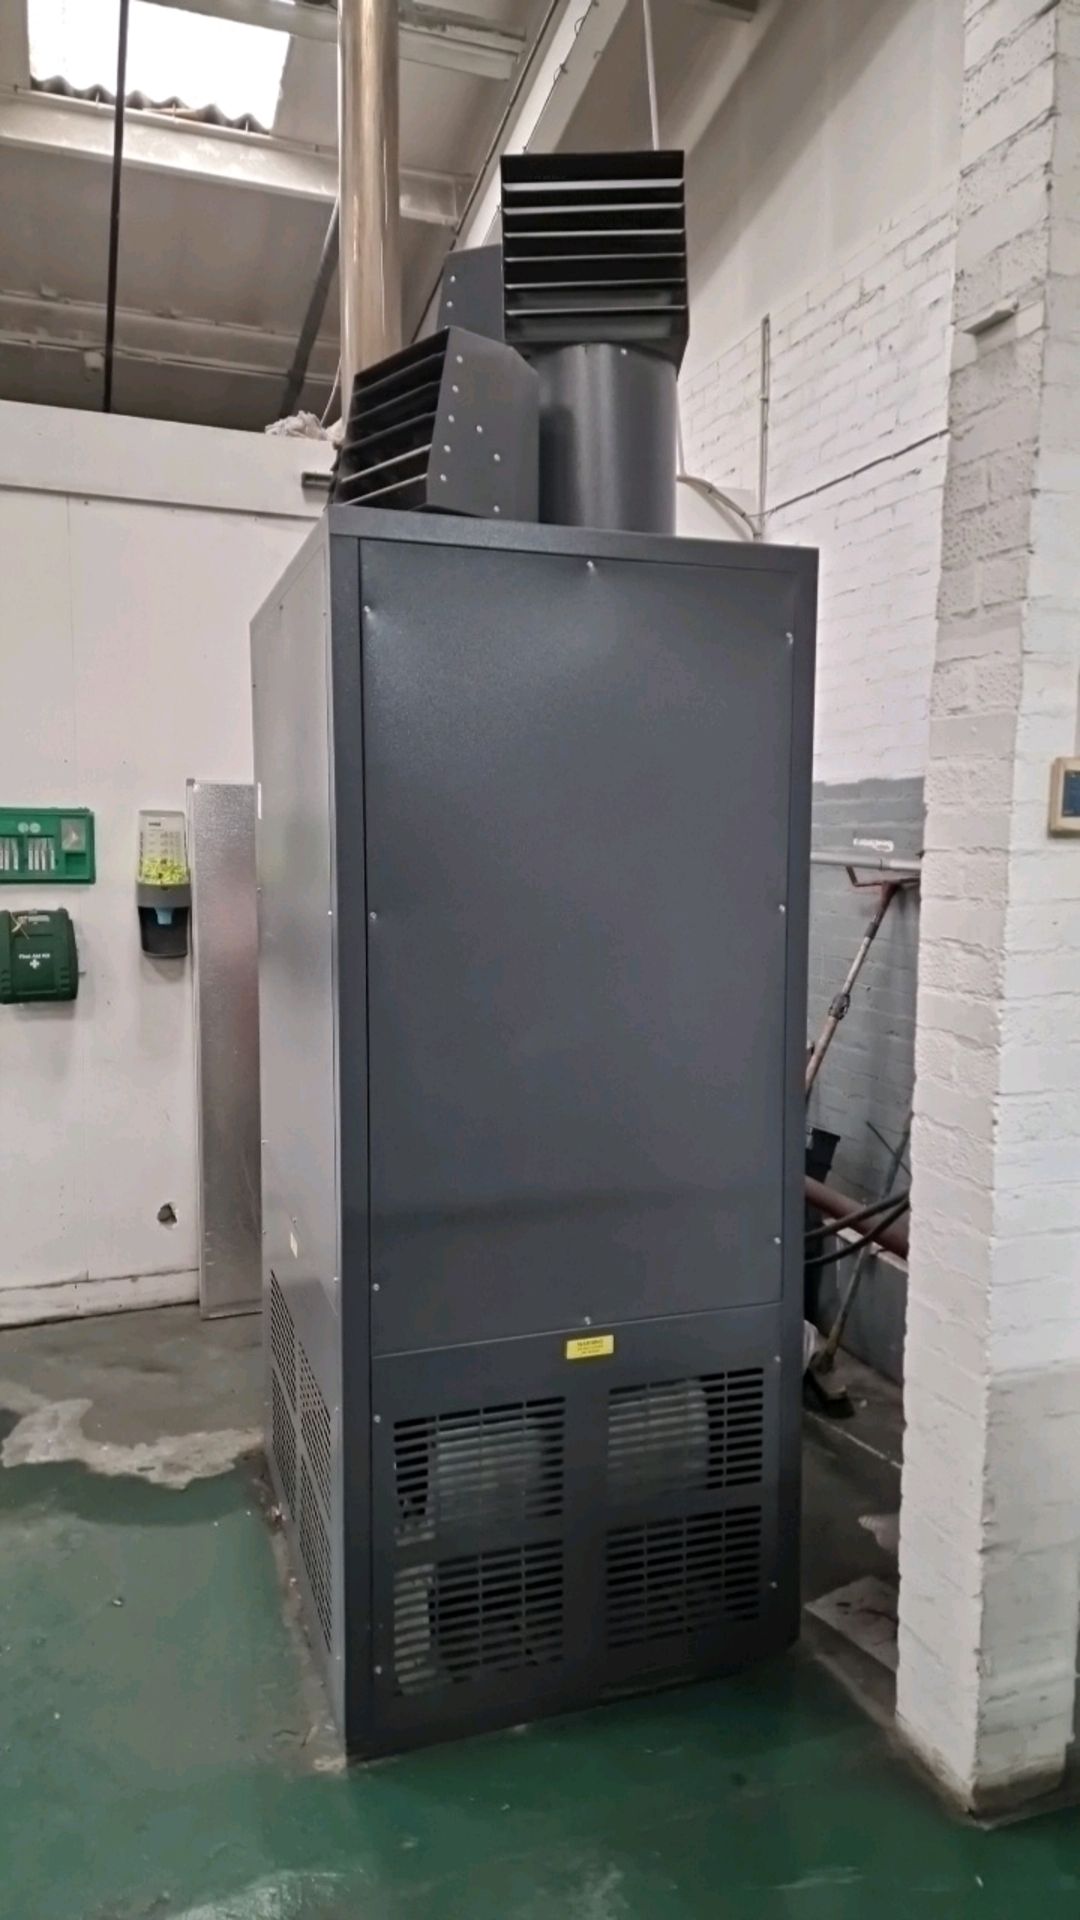 Powrmatic Industrial Heating Unit - Bild 10 aus 10